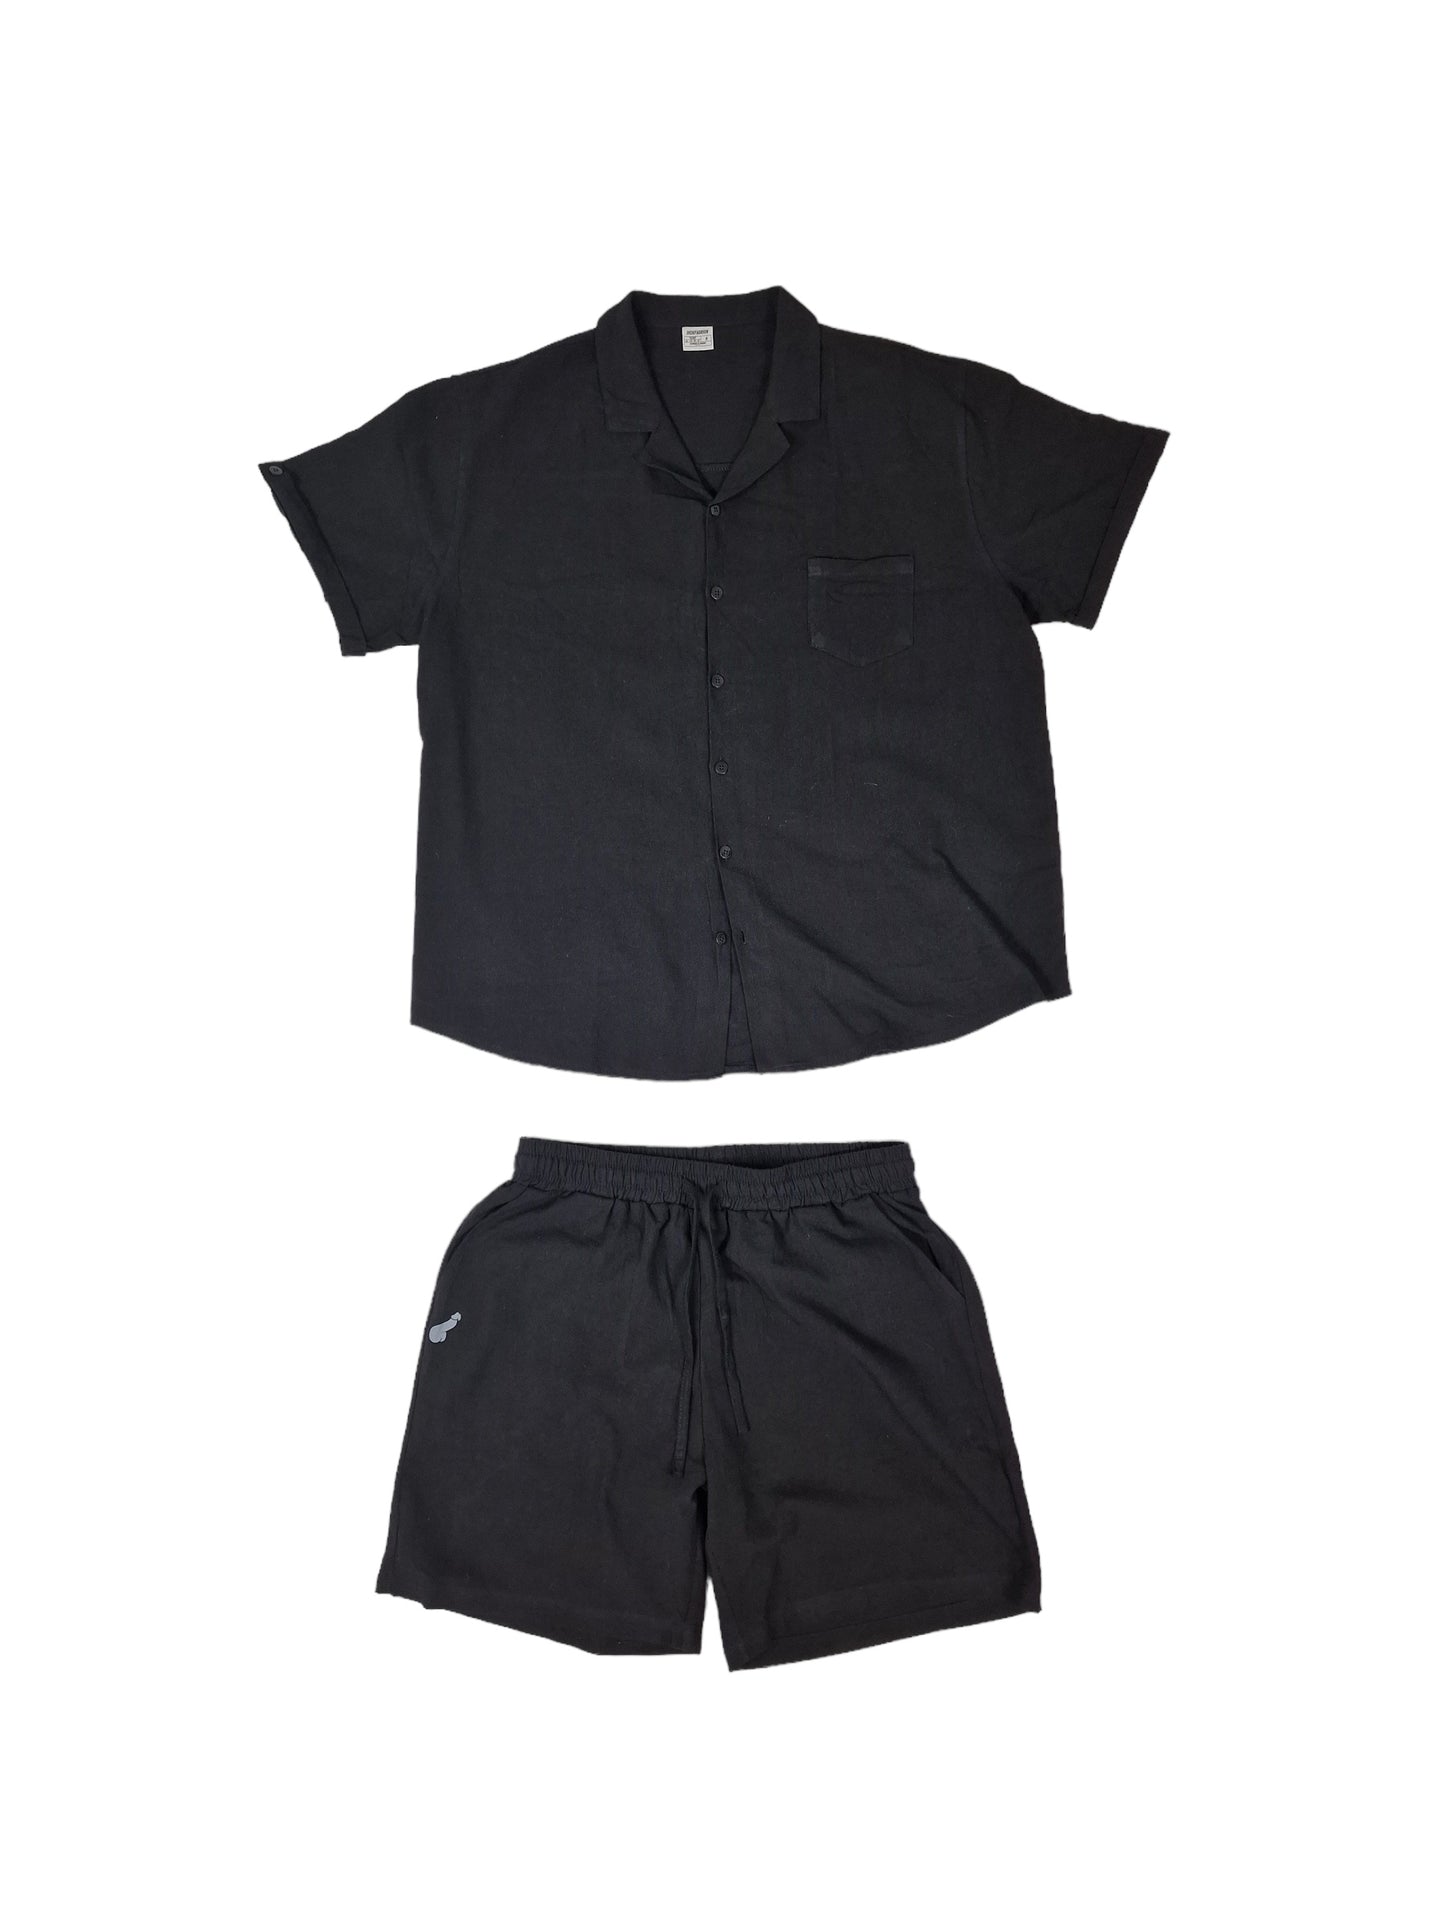 Linne och Bomulls set, shorts och skjorta i relaxed fit - svart med dick